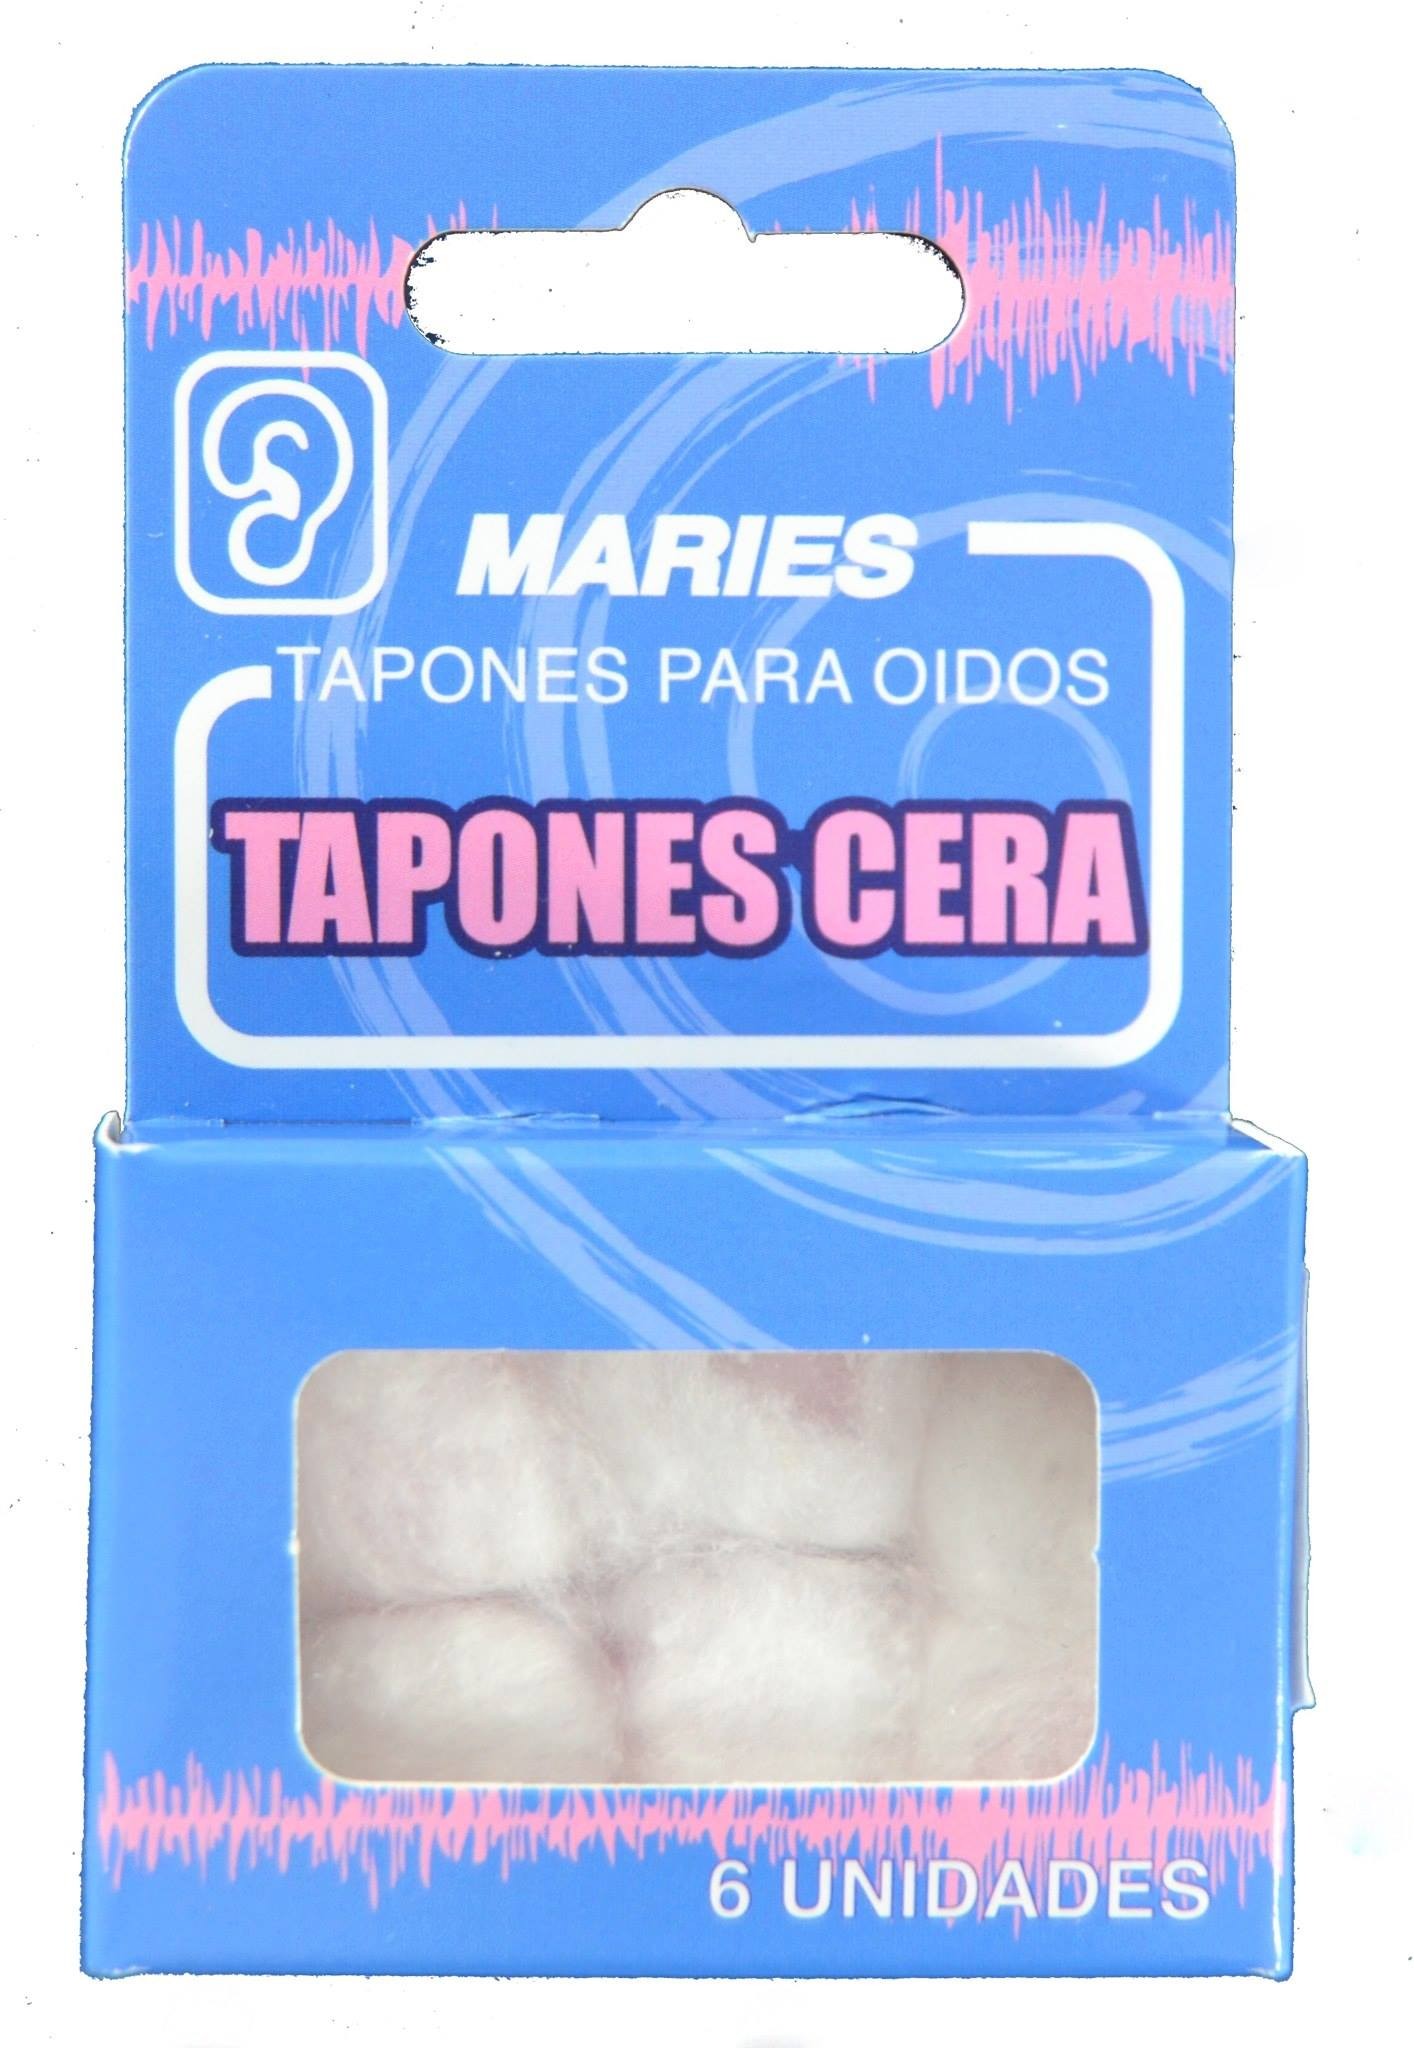 SMOOTH Tapones Cera (con algodón) - 20040201/ 20040202 - PRIM FARMA